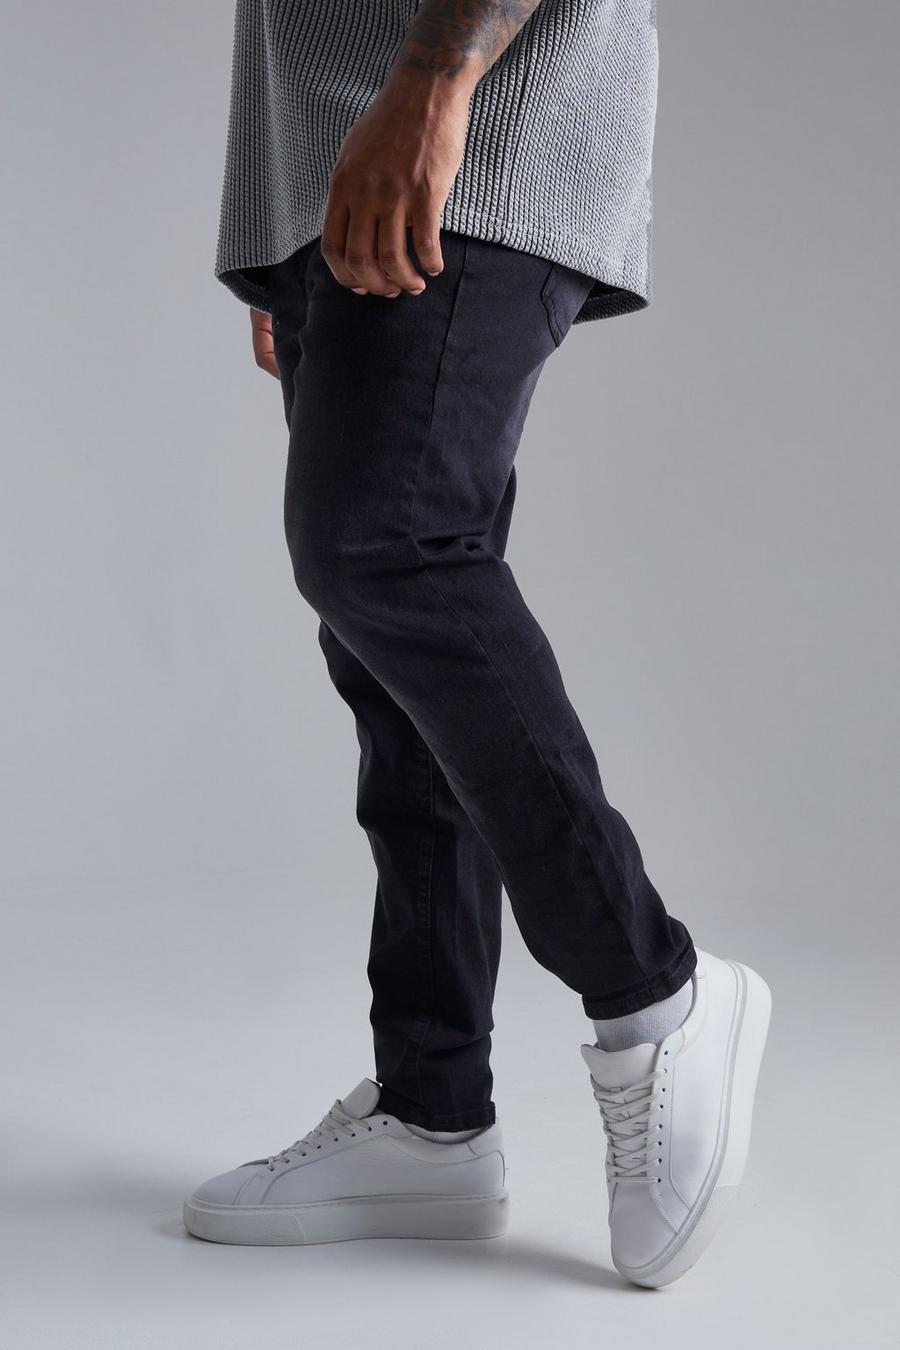 שחור דהוי סקיני ג'ינס נמתח בשילוב פוליאסטר ממוחזר, מידות גדולות